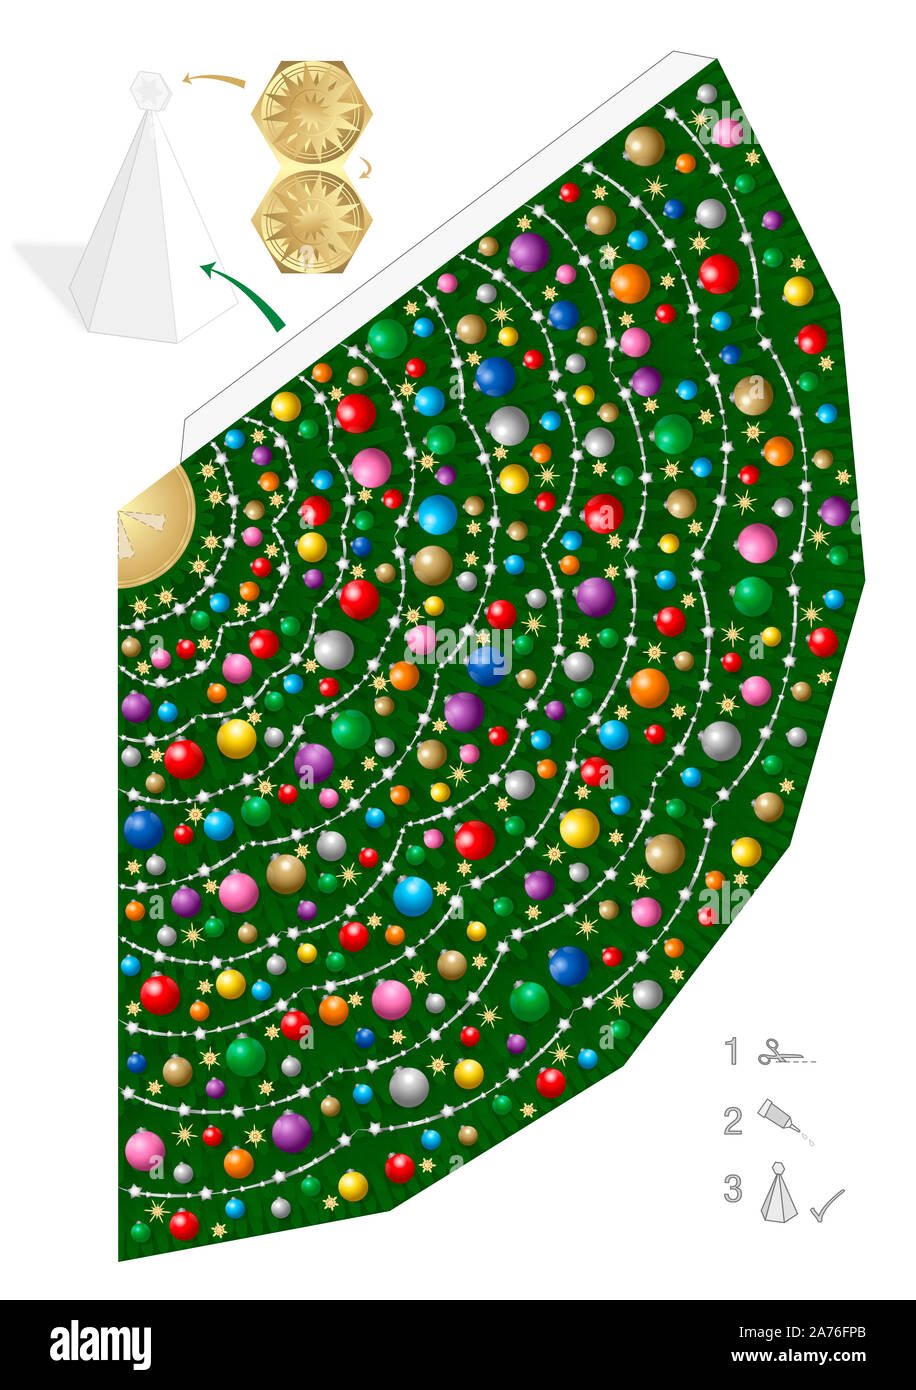 Bunter Weihnachtsbaum Papier Modell. Kreativer Spaß für Kindergarten, Schule oder private Handwerk Lektionen - einfache Vorlage ausschneiden, Falten und Kleben. Stockfoto